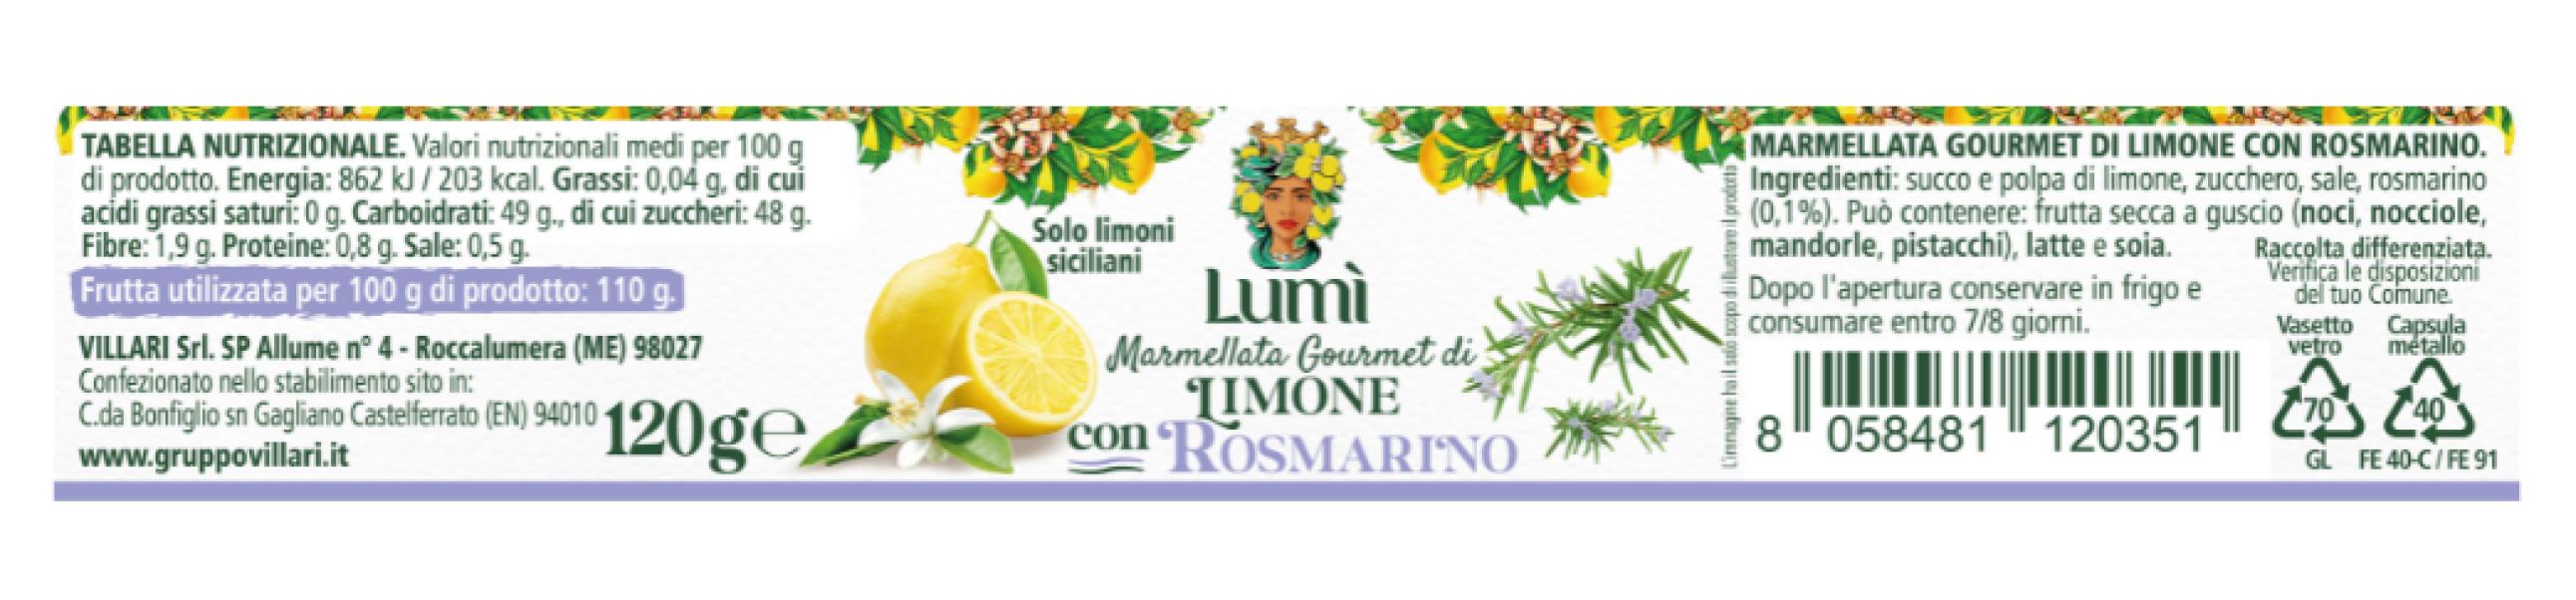 Marmellata gourmet Lumi di limone e rosmarino 12 vasetti da 120gr. Etichetta con valori nutrizionali e ingredienti